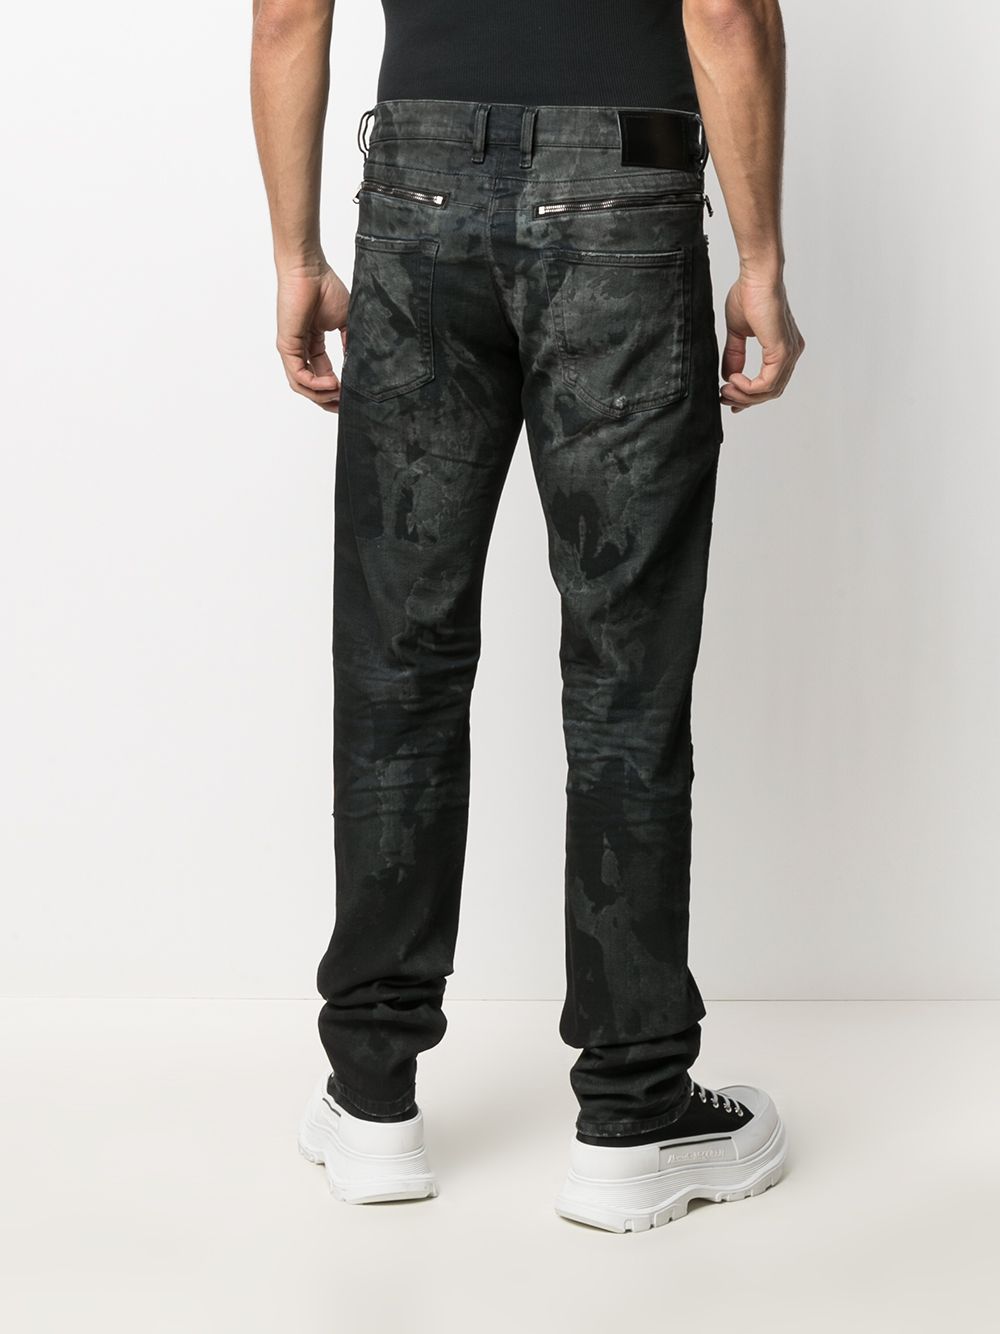 фото Diesel black gold джинсы скинни с эффектом потертости